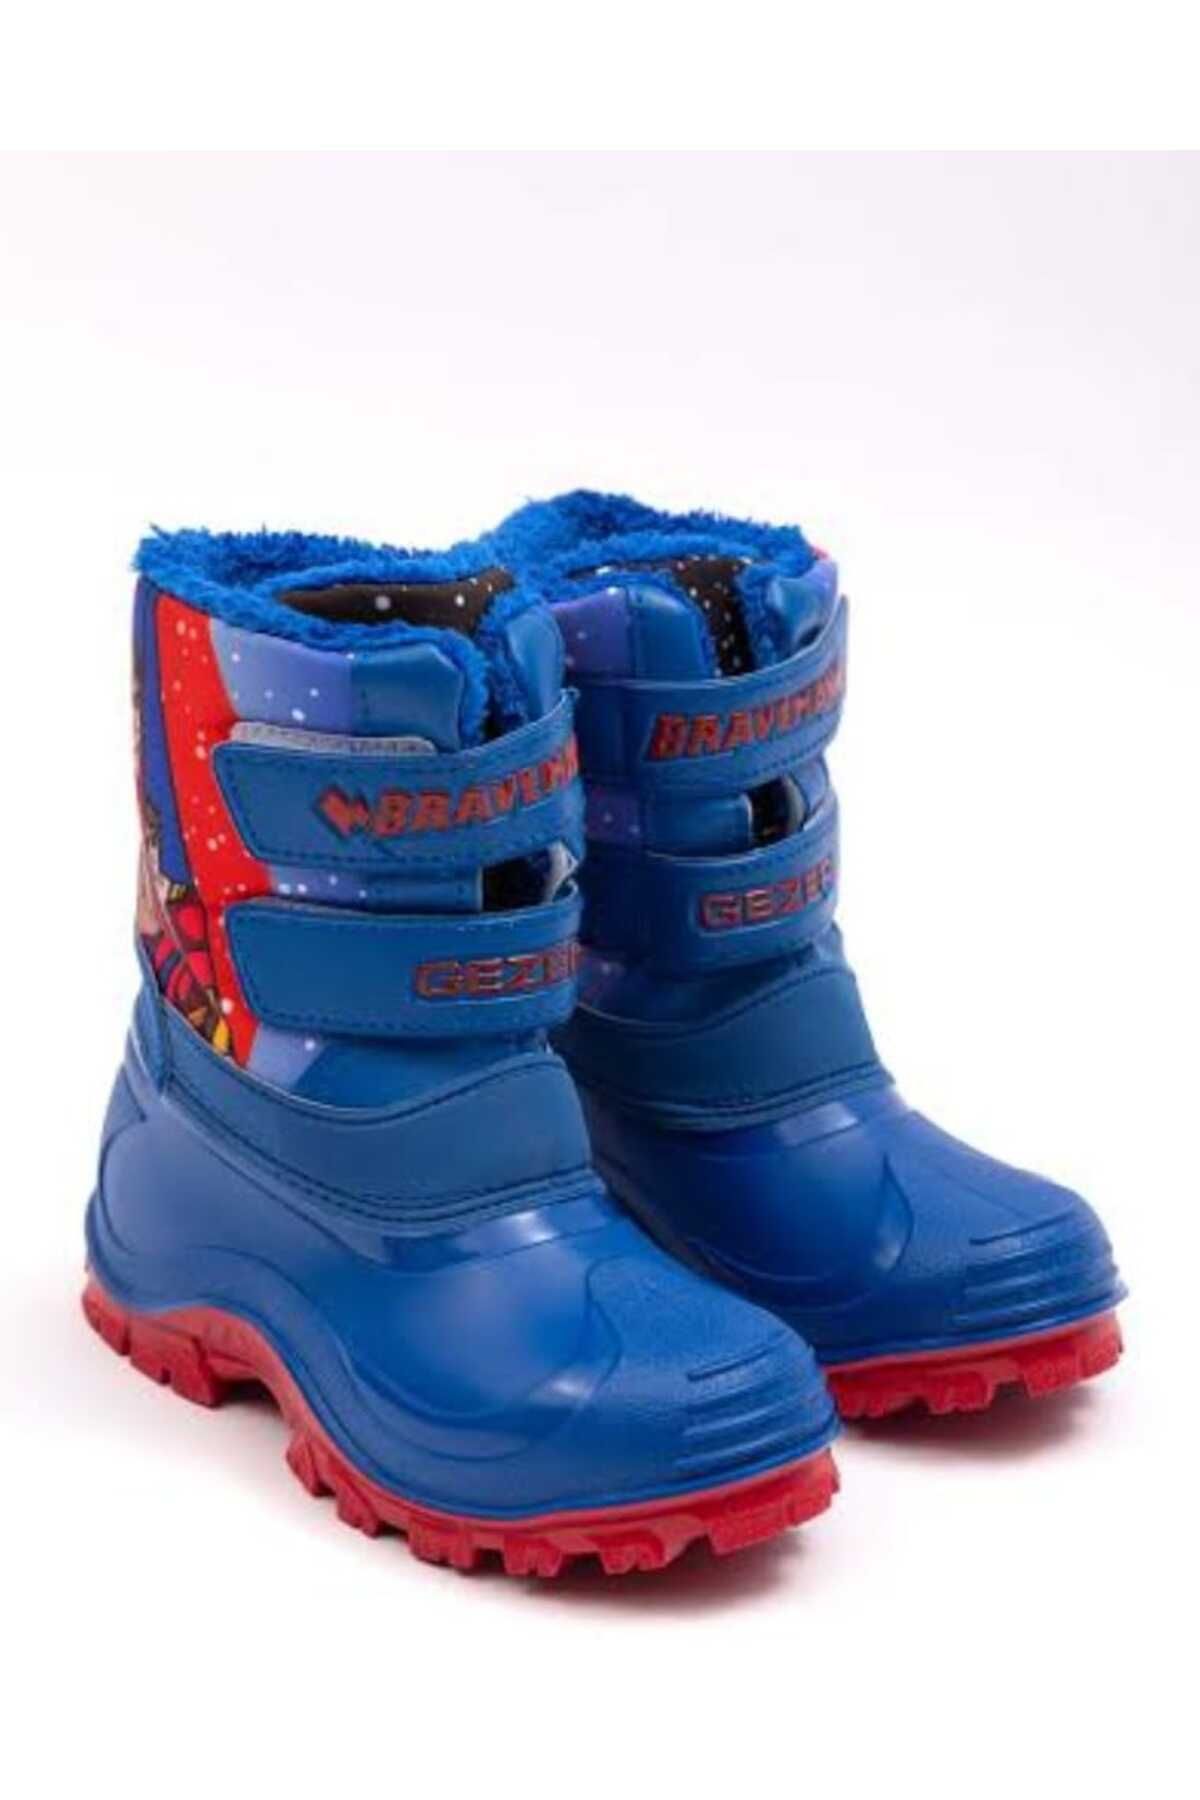 Erciyes ayakkabı MARKET Erciyes Kar Botu Içi Komple Kürklü Kar Ve Yağmur Suyu Çekmez Kaymaz Tabanlı